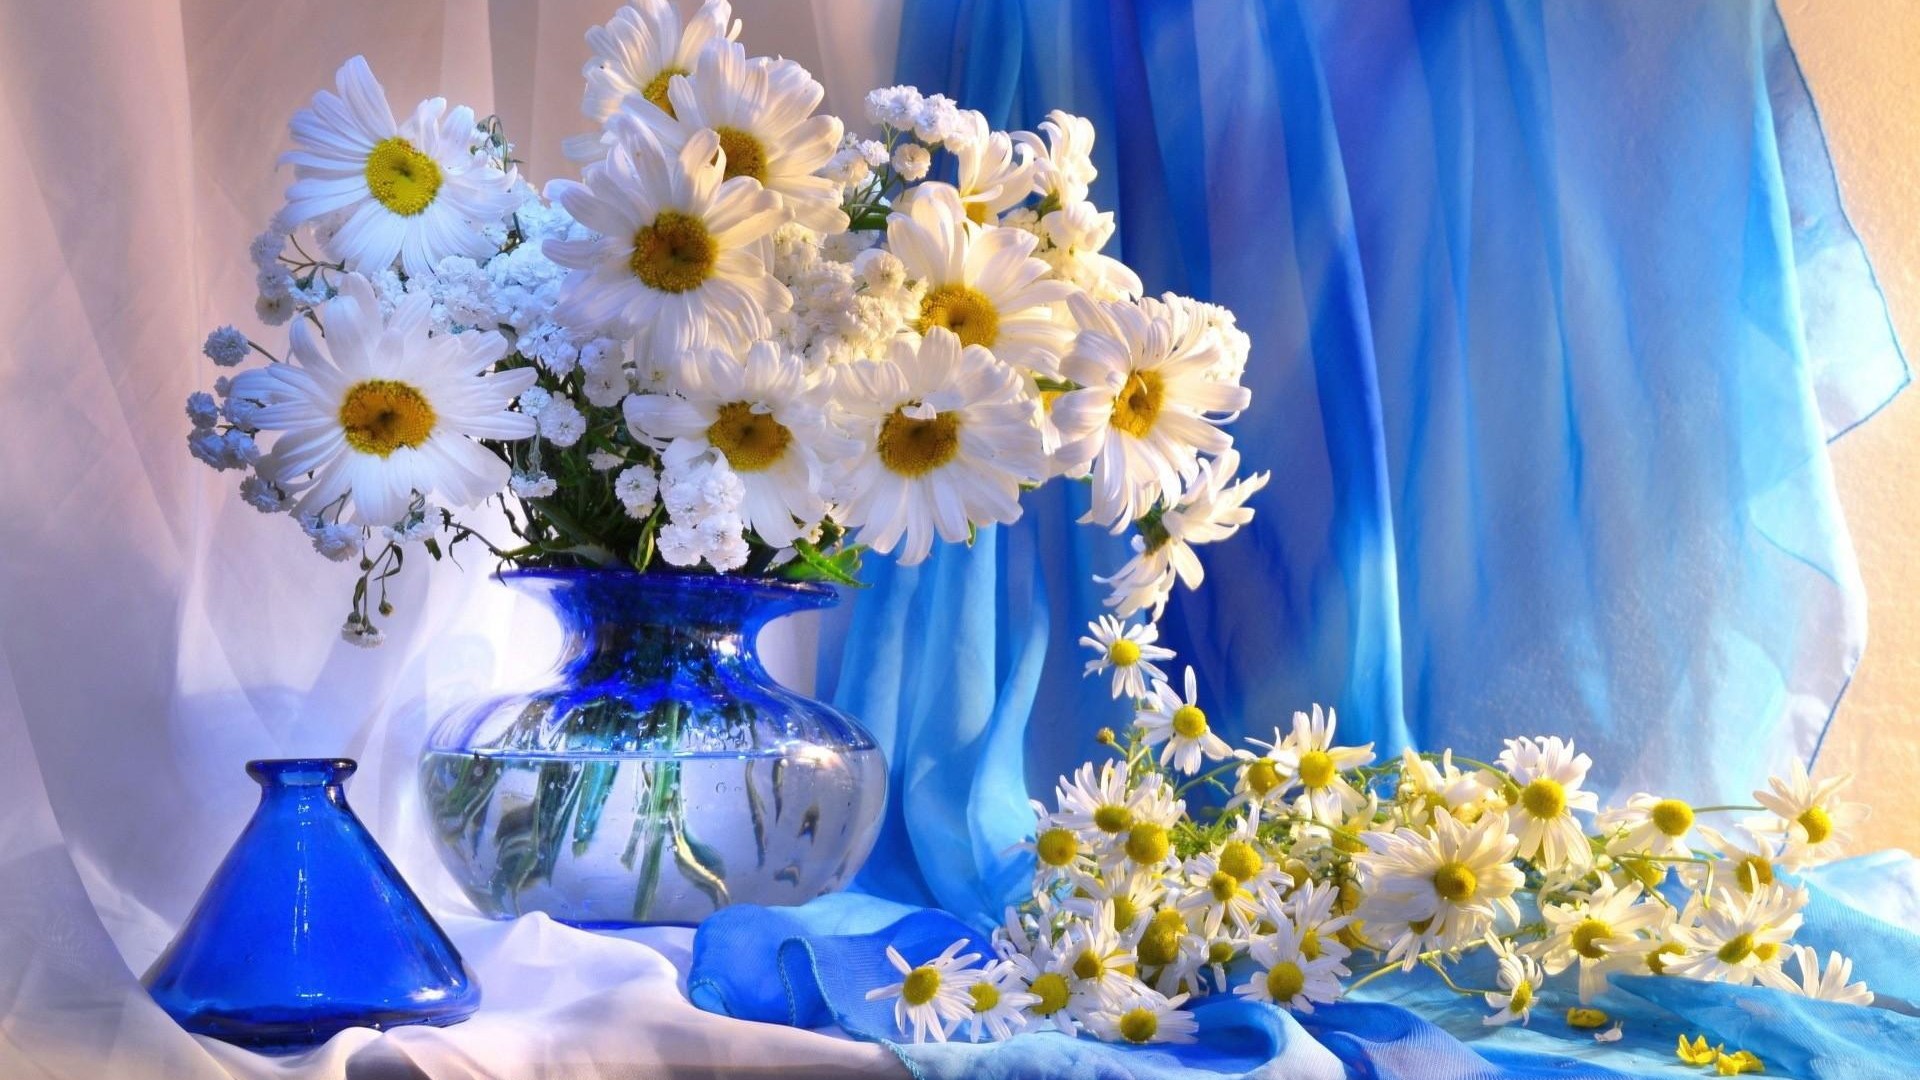 1920x1080 daisy vase flowers bouquet decoration